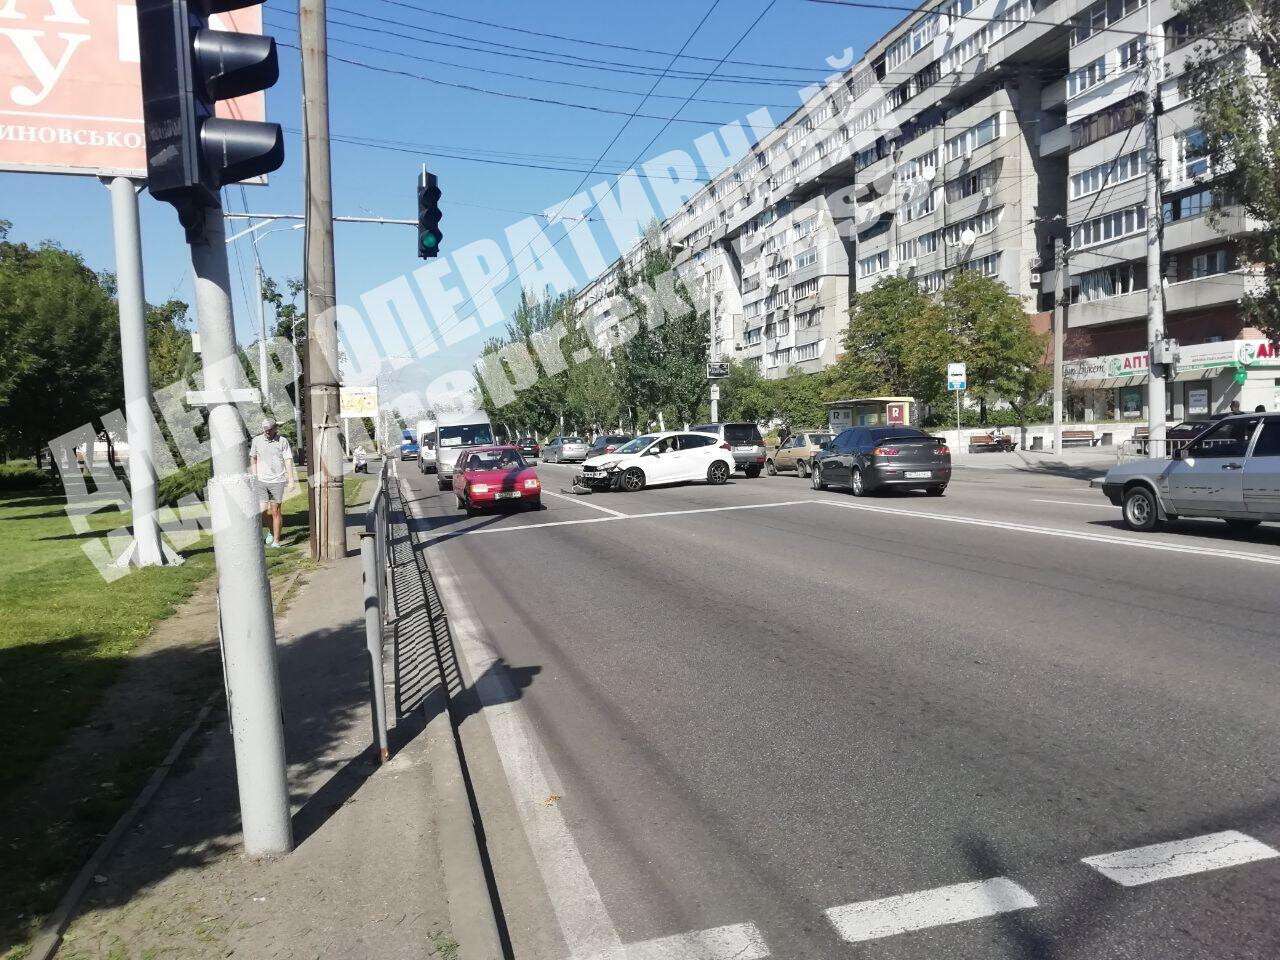 В Днепре на улице Маршала Малиновского произошла авария с участием двух легковых автомобилей: Ford и Hyundai Coupe, Видео момента ДТП. Новости Днепра